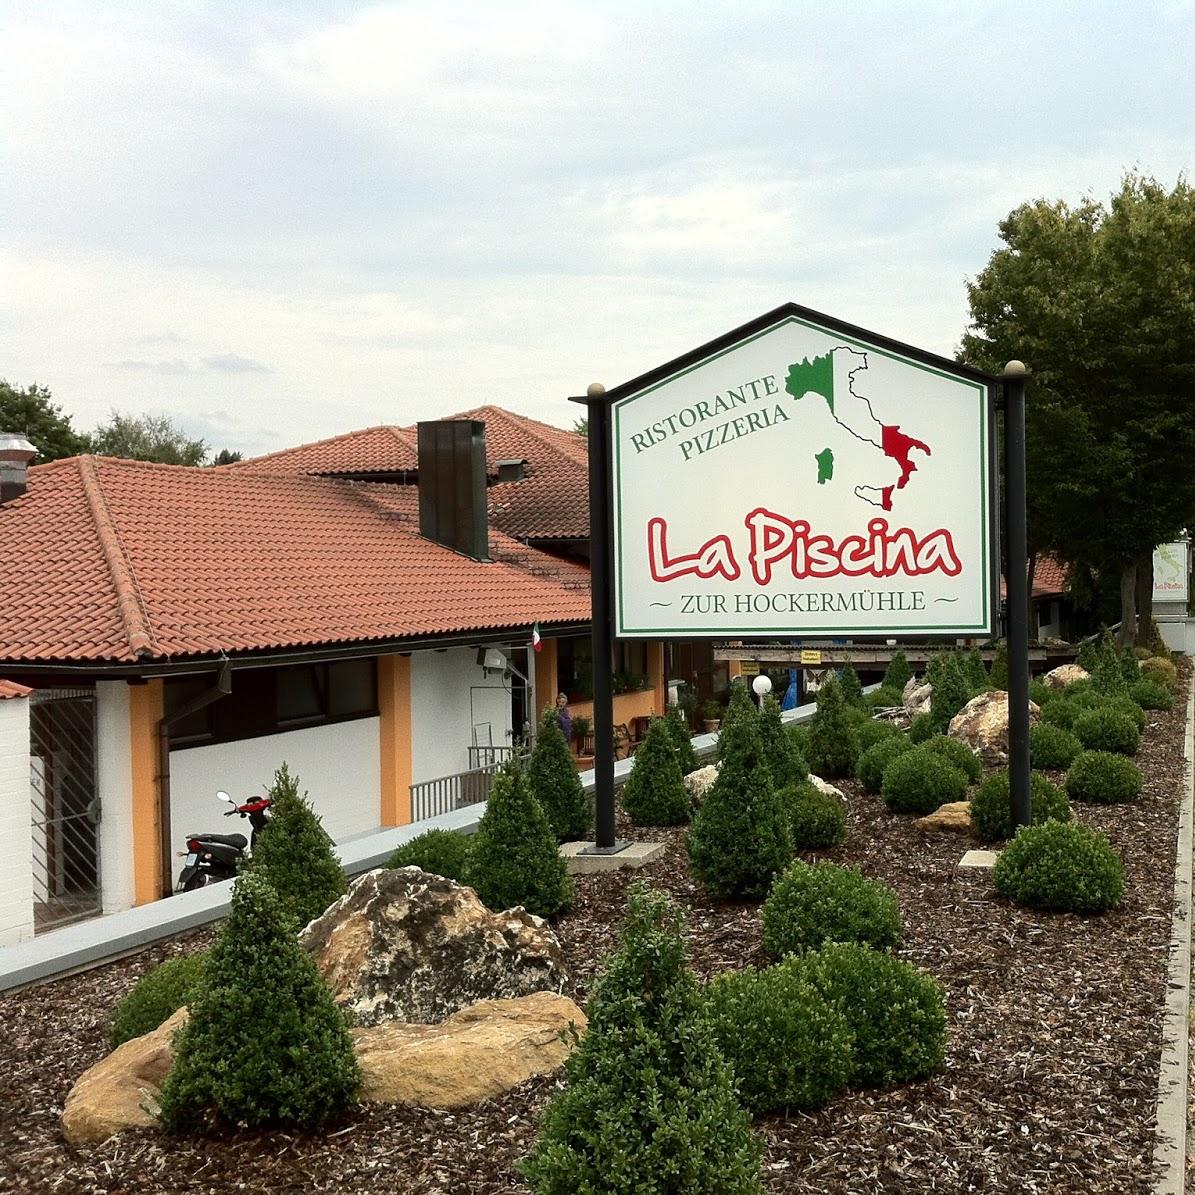 Restaurant "Zur Hockermühle - La Piscina" in  Amberg